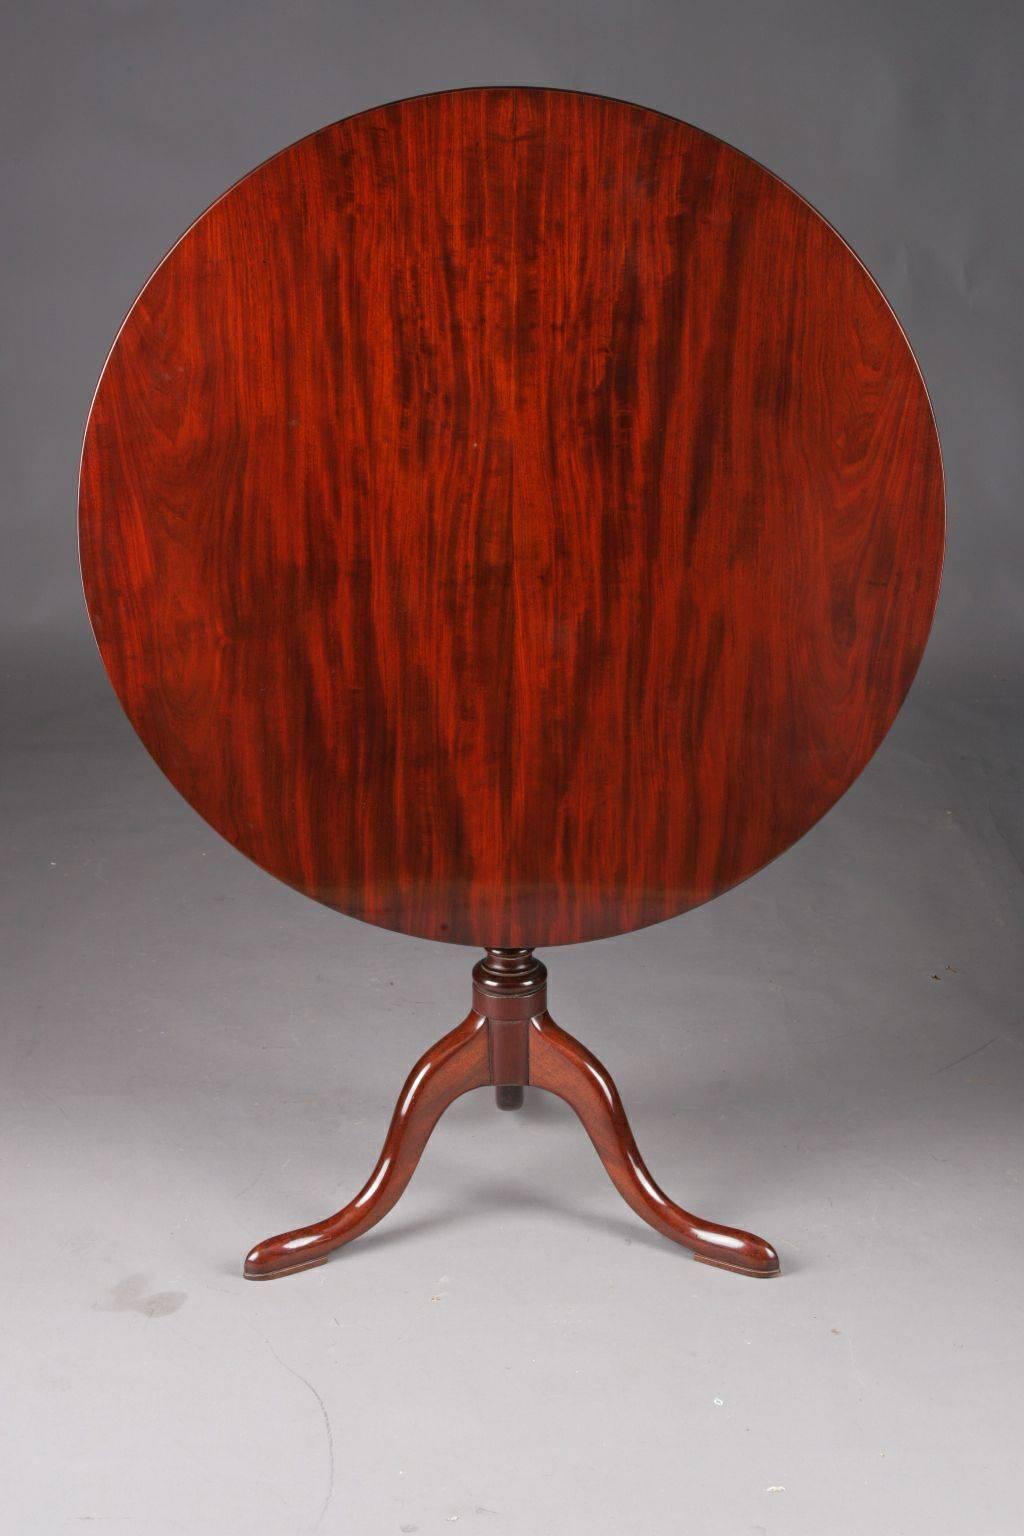 Rare table pliante ou table tripode d'origine anglaise Regency 18-19ème siècle.
De part en part, de l'acajou massif. Tige de salle de bal mince, dont les trois pattes courbes s'étendent en pieds d'oreiller. Deux barres droites servant de support à